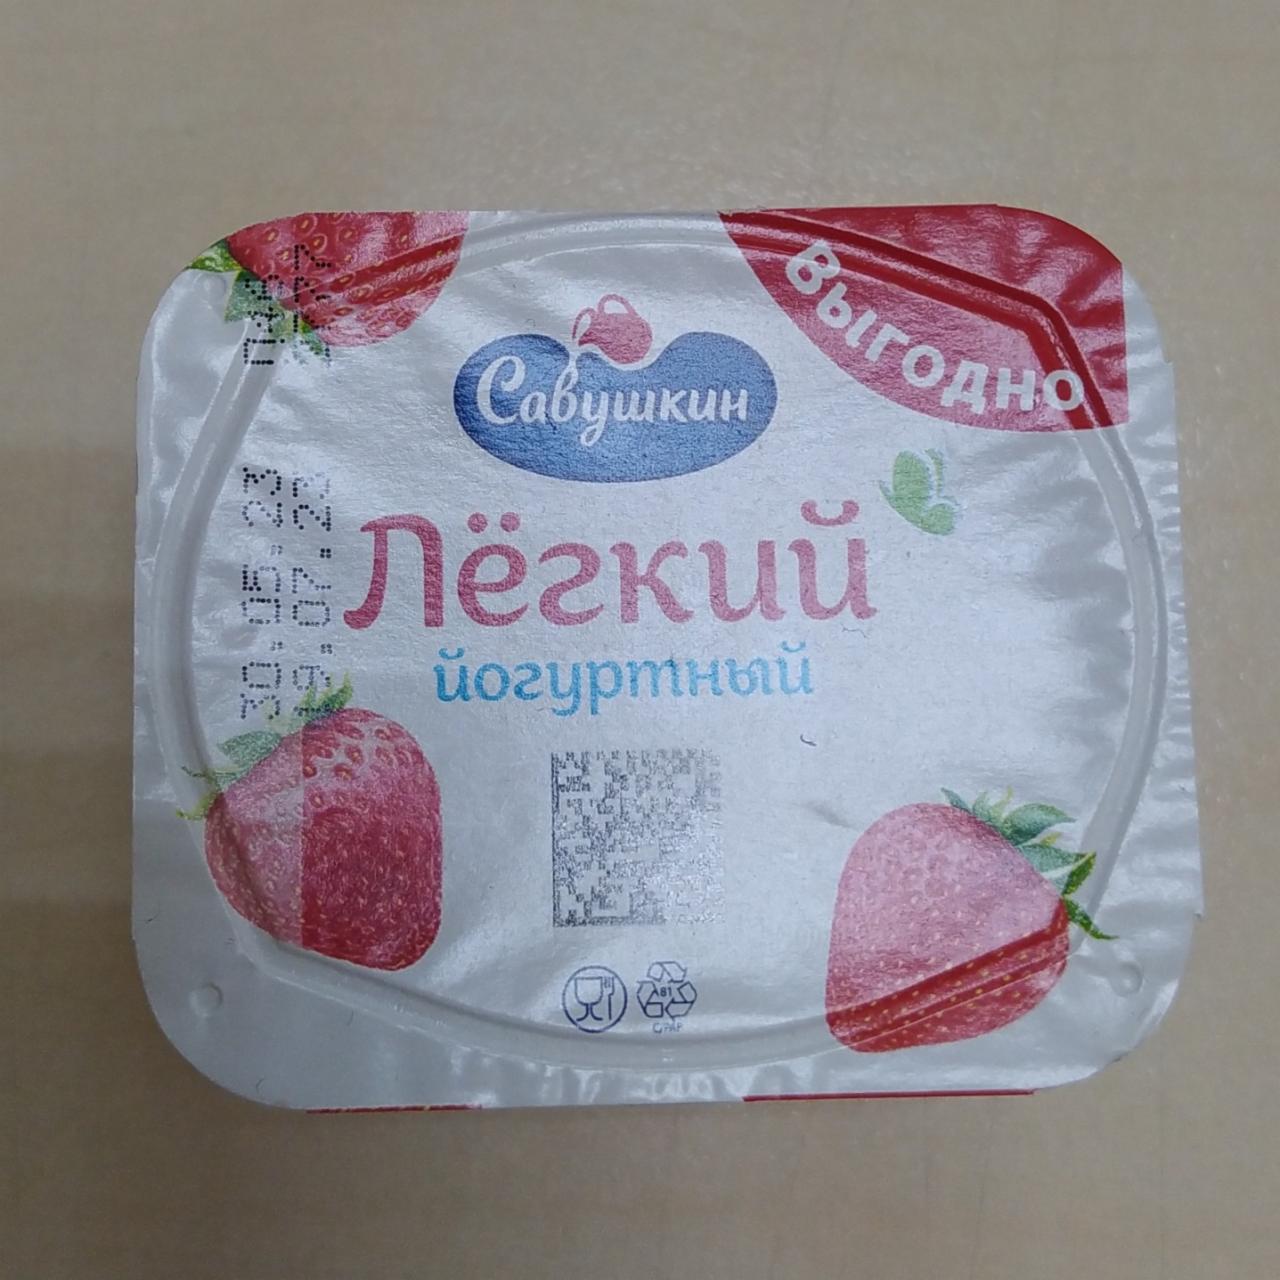 Фото - Продукт йогуртный Лёгкий с клубникой Савушкин